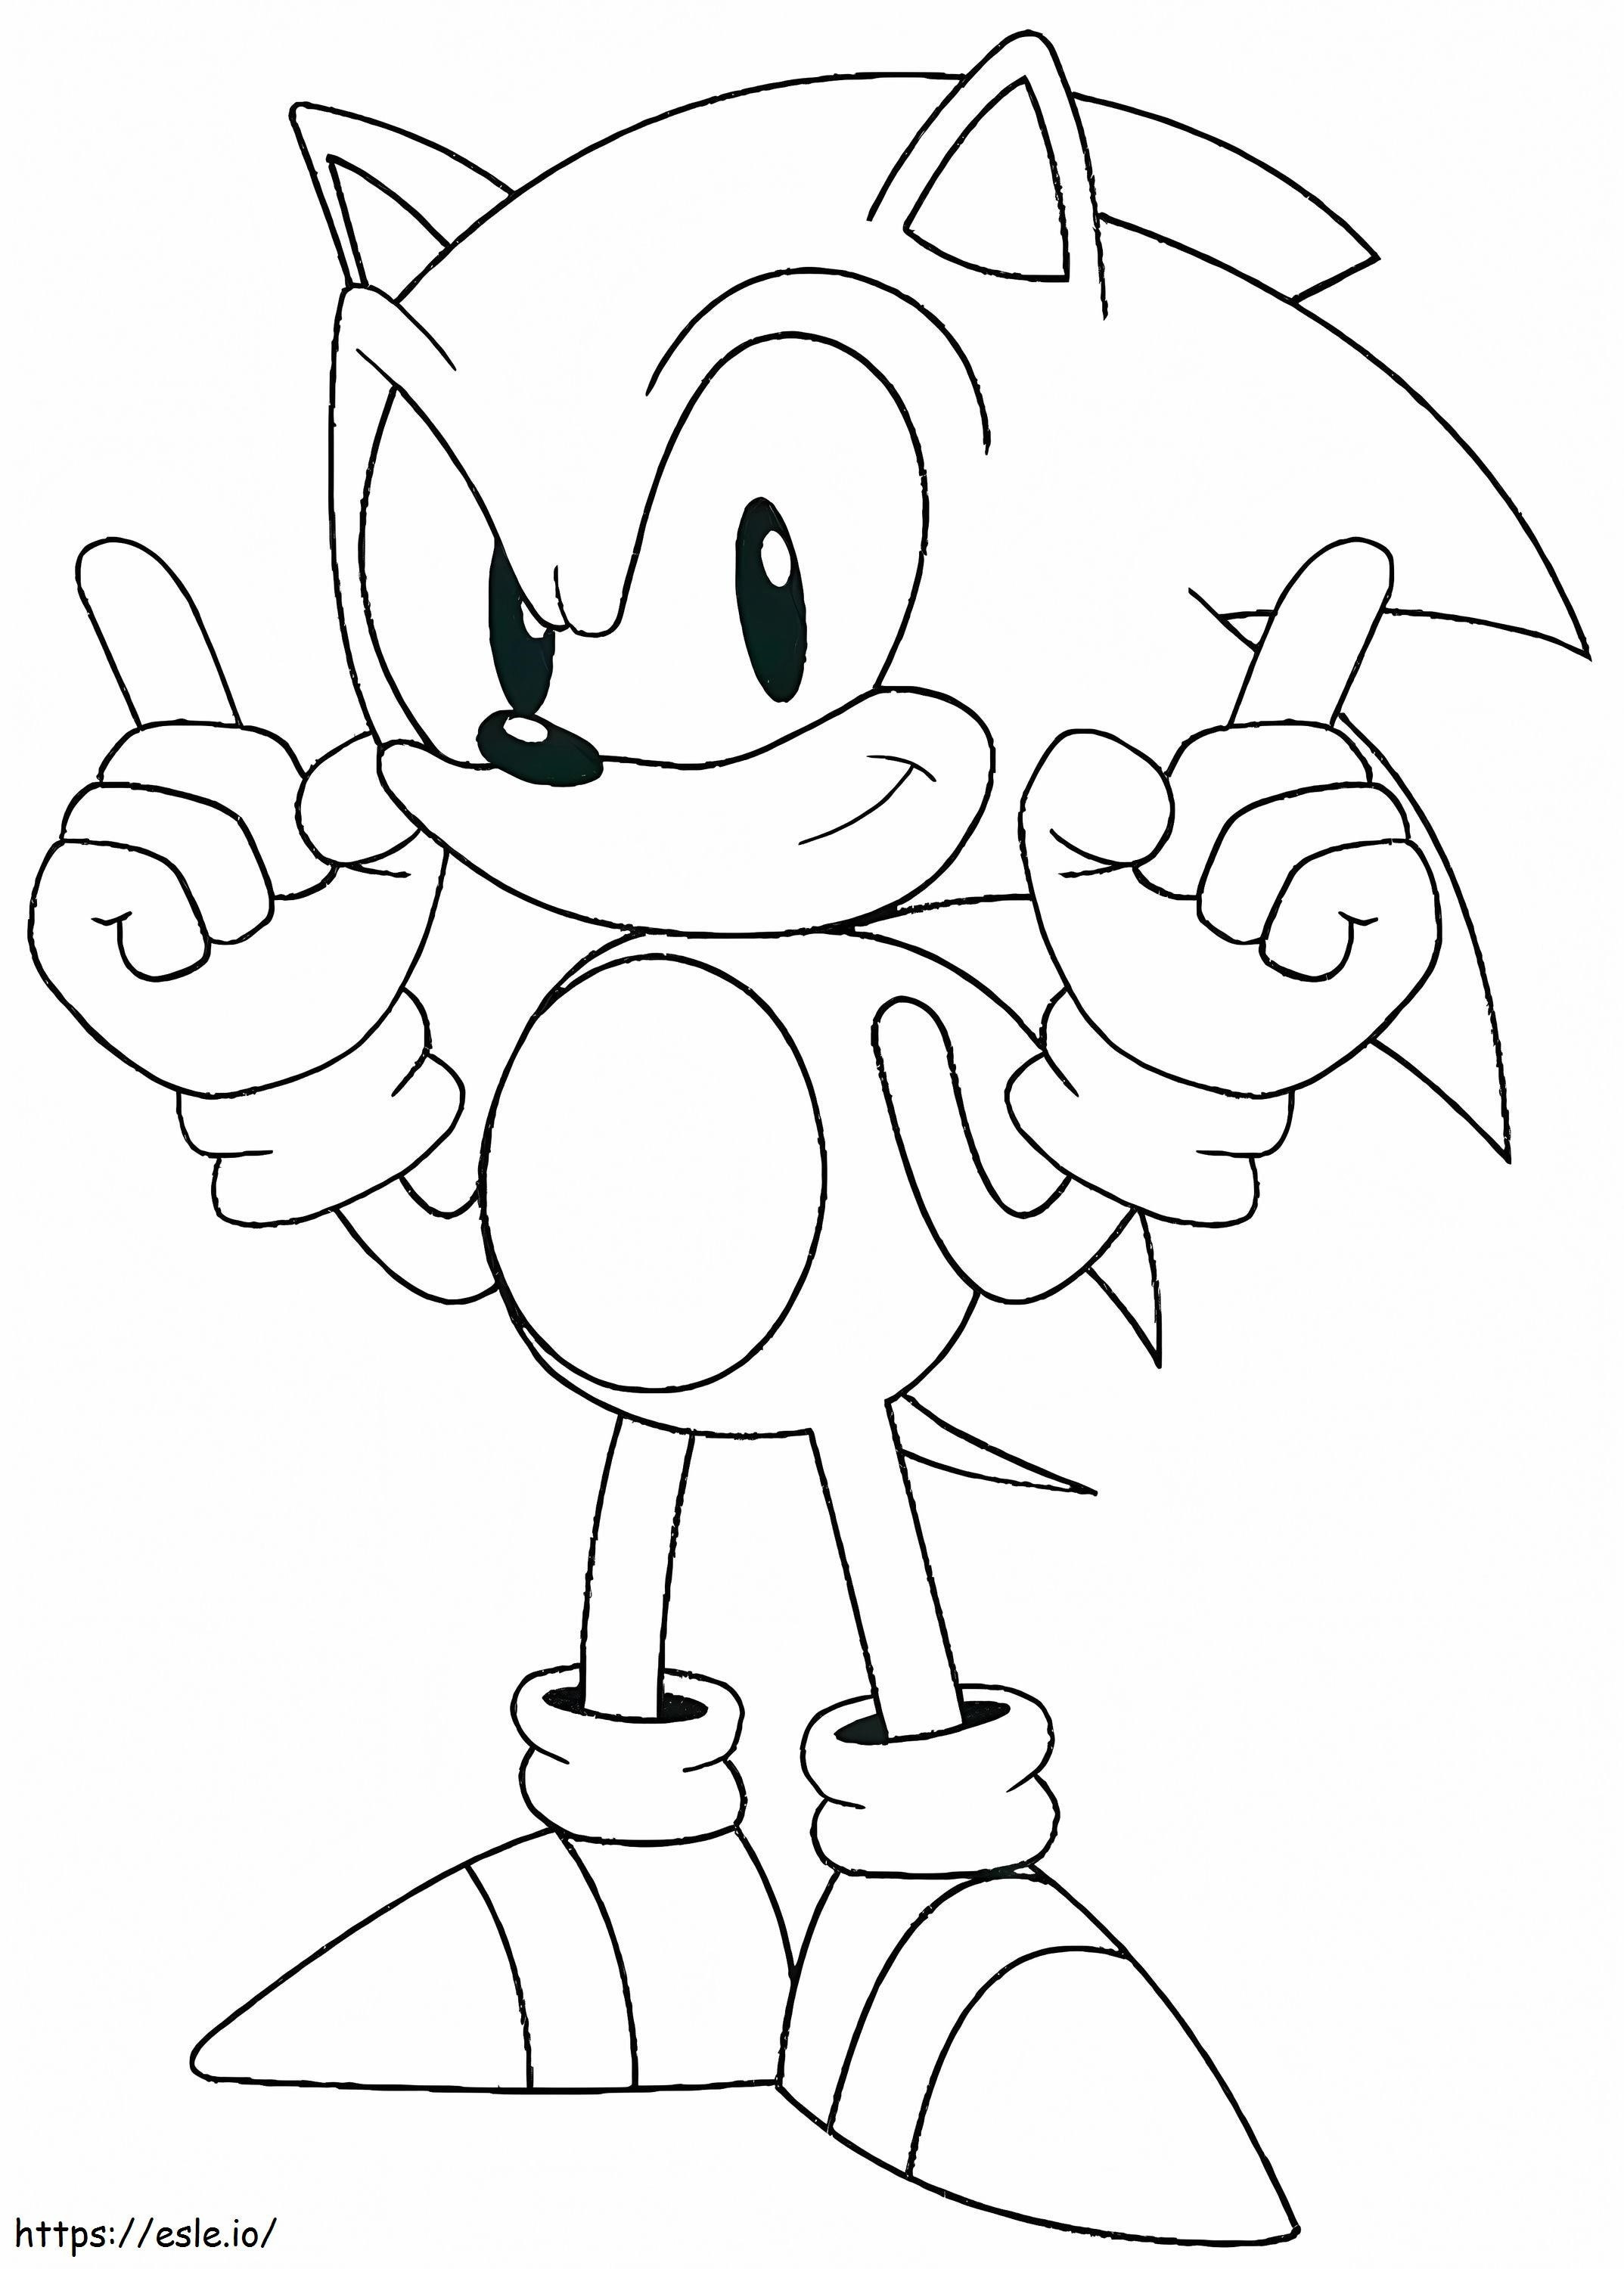  Grátis Sonic The Hedgehog para colorir